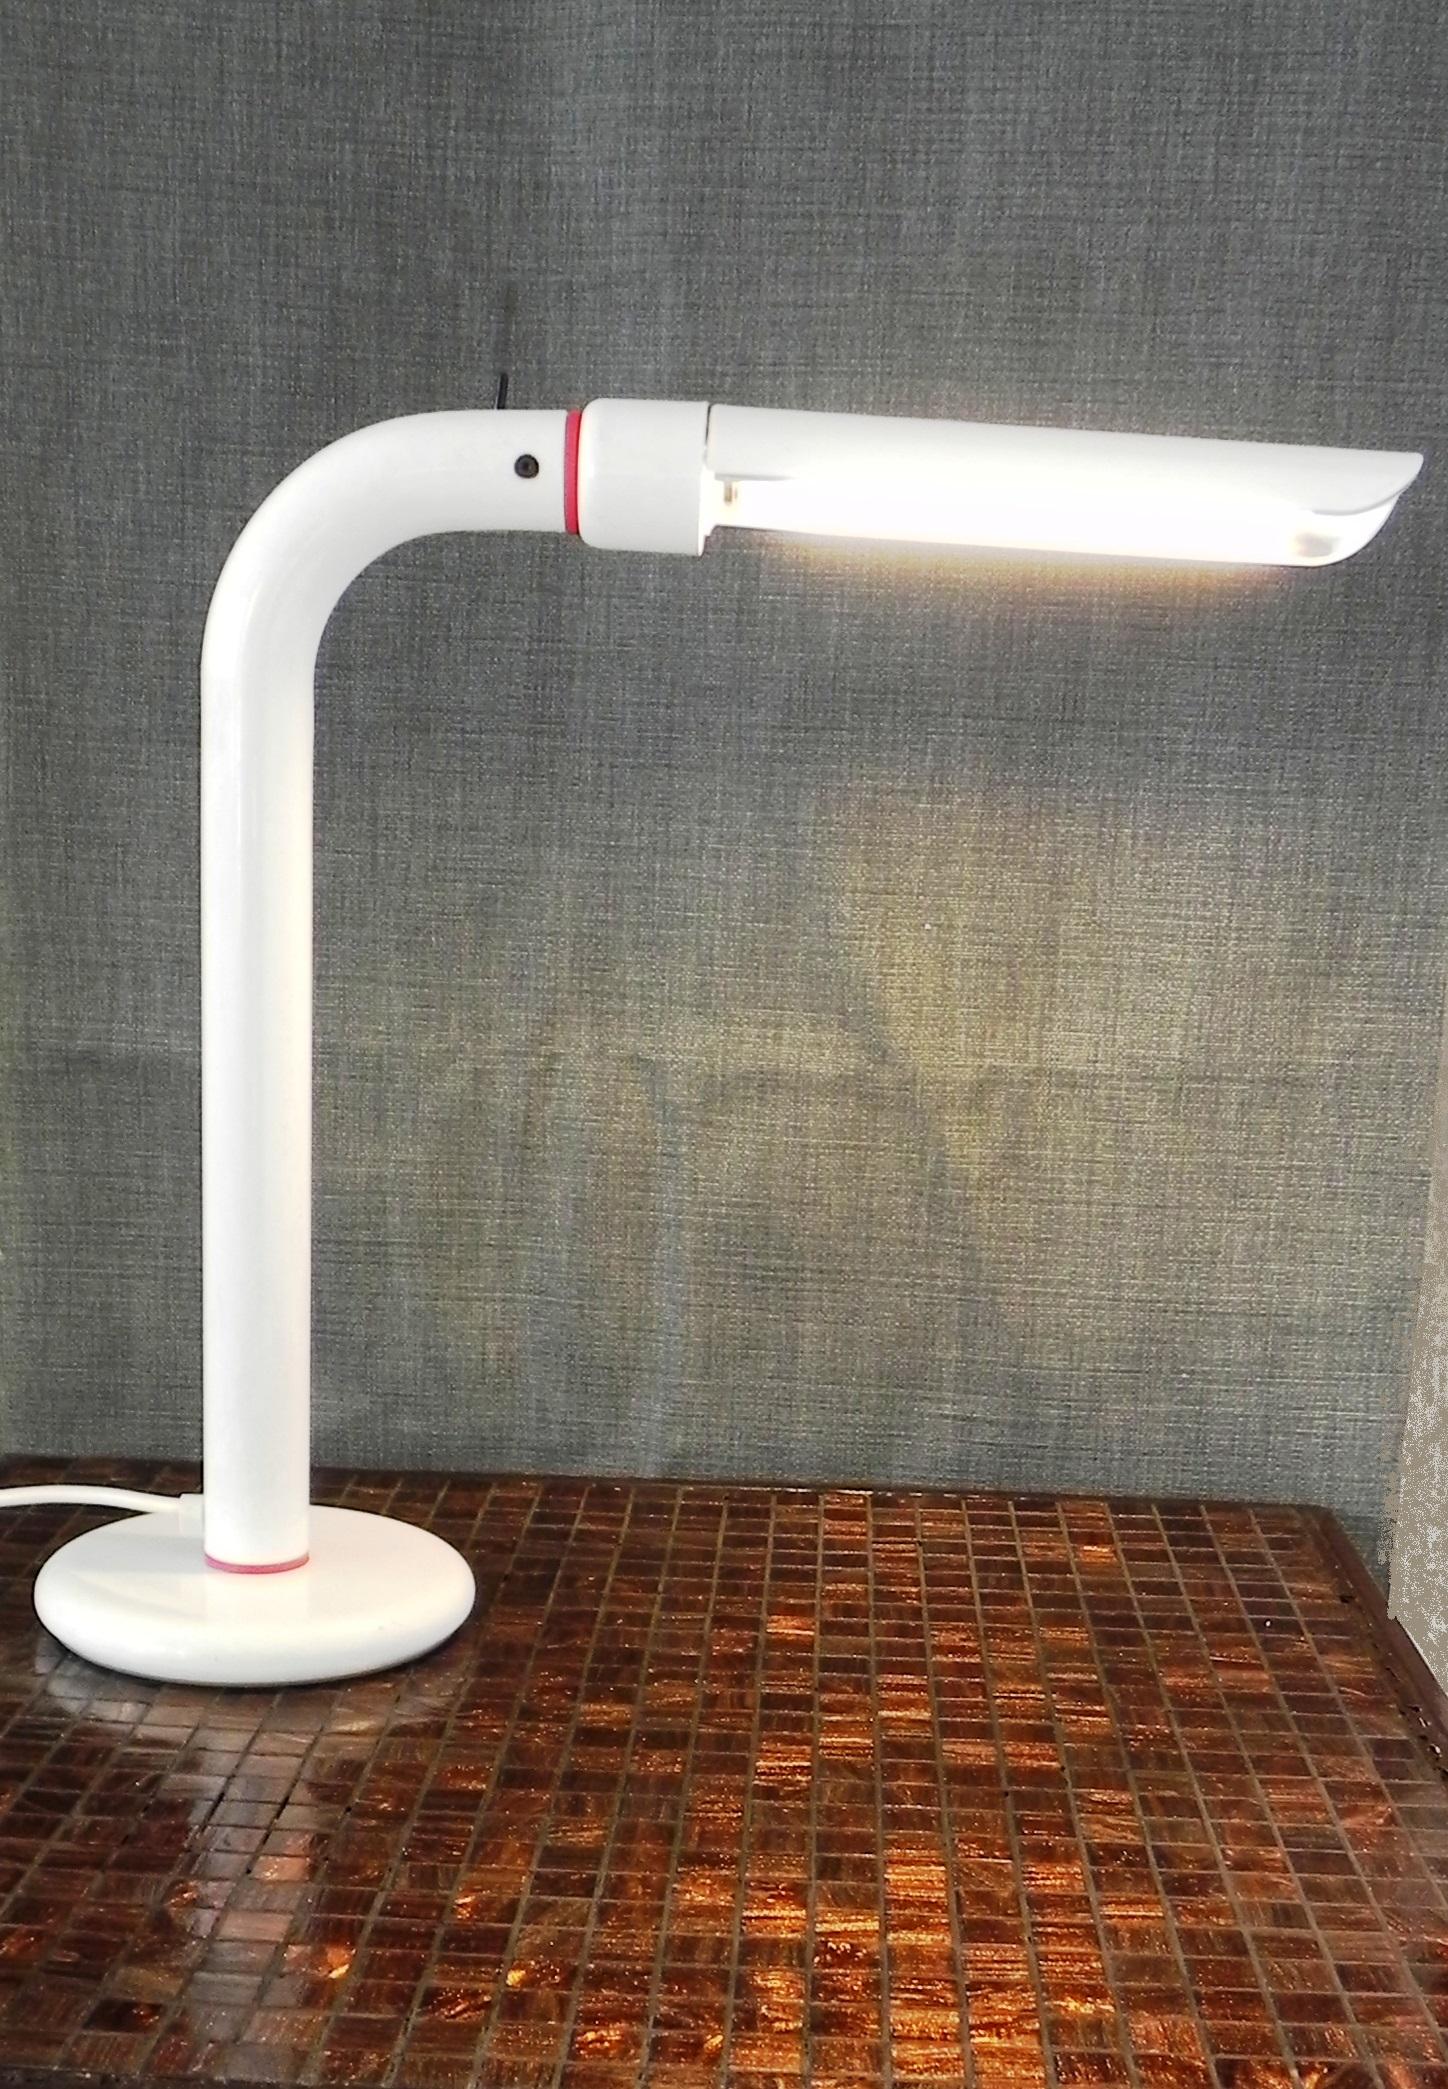 lampada da tavolo anni 90 , Philips mod FTH 411 orientabile 30° dx -sx. interruttore sulla sommita'. lampadina al neon. 11 w, usata ma ben tenuta.
Funziona perfettamente.